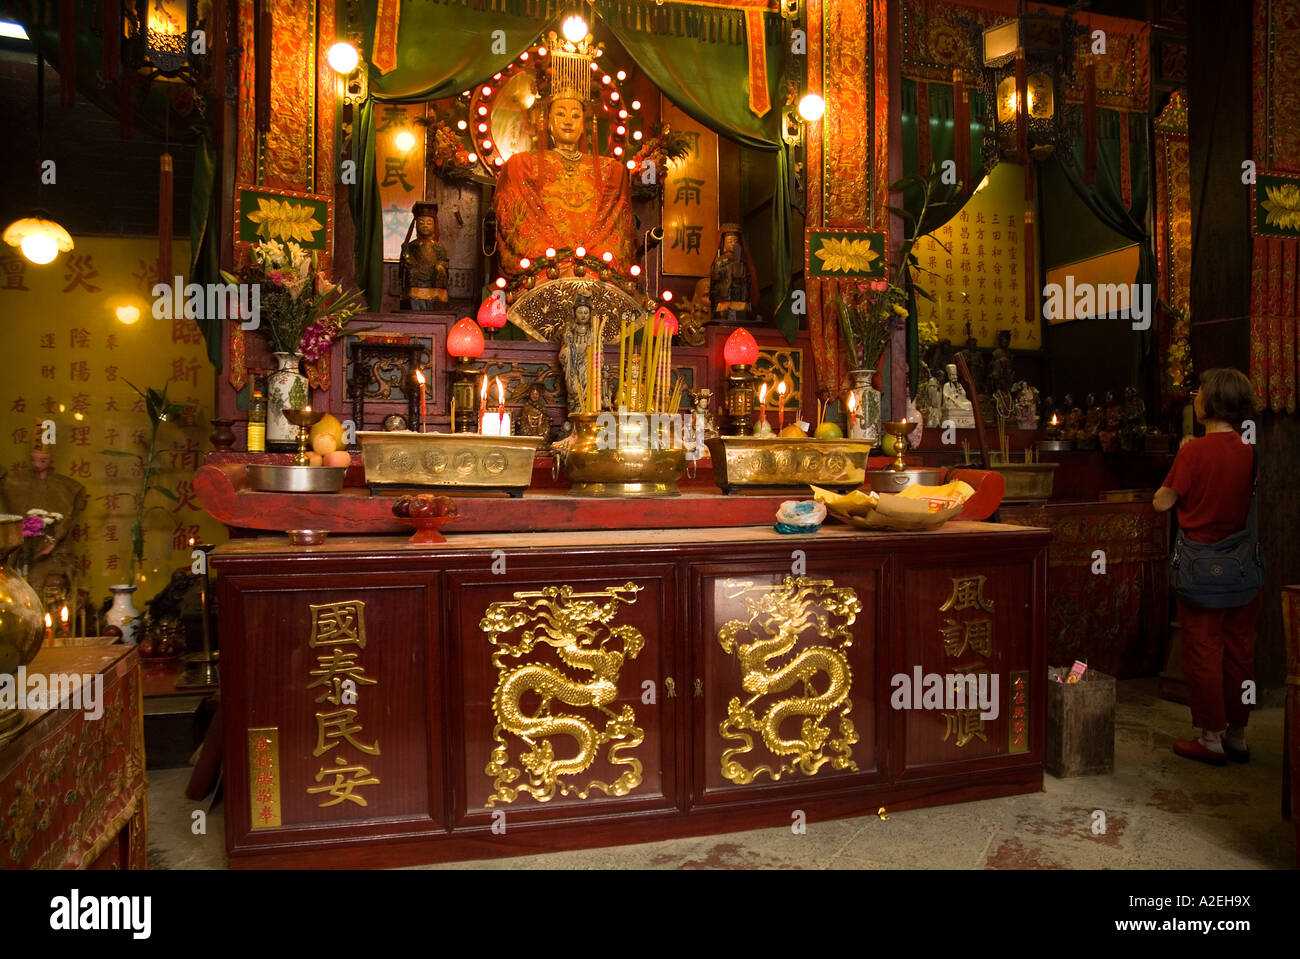 dh Public Square Street Temple YAU MA TEI HONGKONG Frau verehrt am Altar Tin Hau Tempel Anbetung tao Ritual china Stadt Schrein daoismus Stockfoto